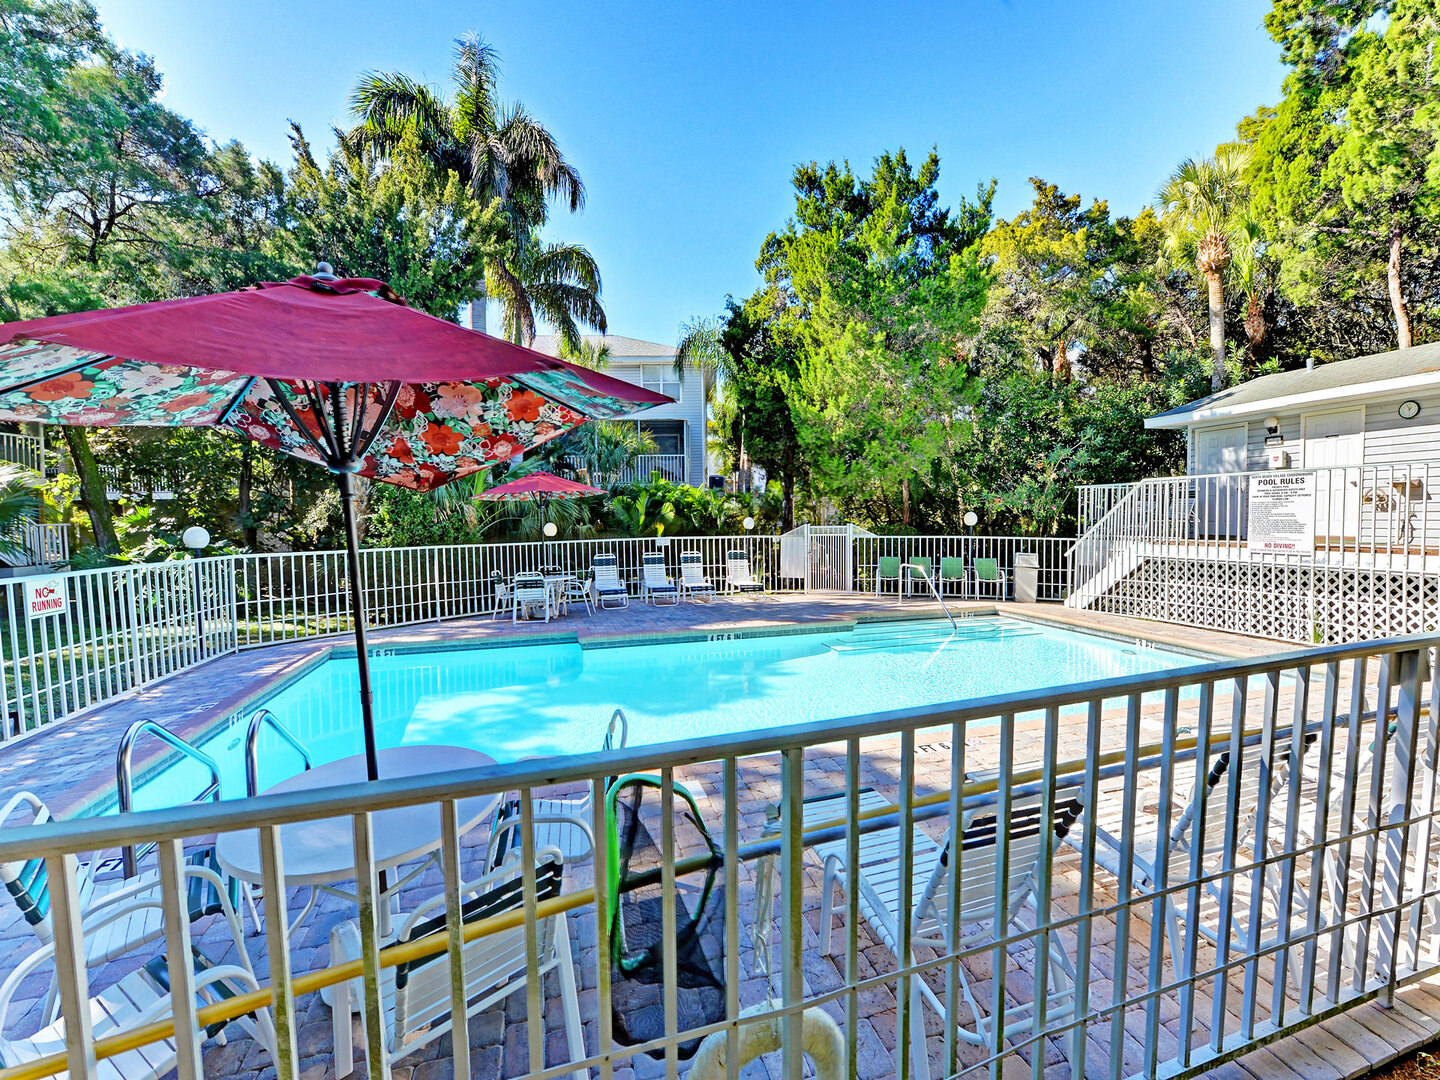 A Gulf Dream condo pool area